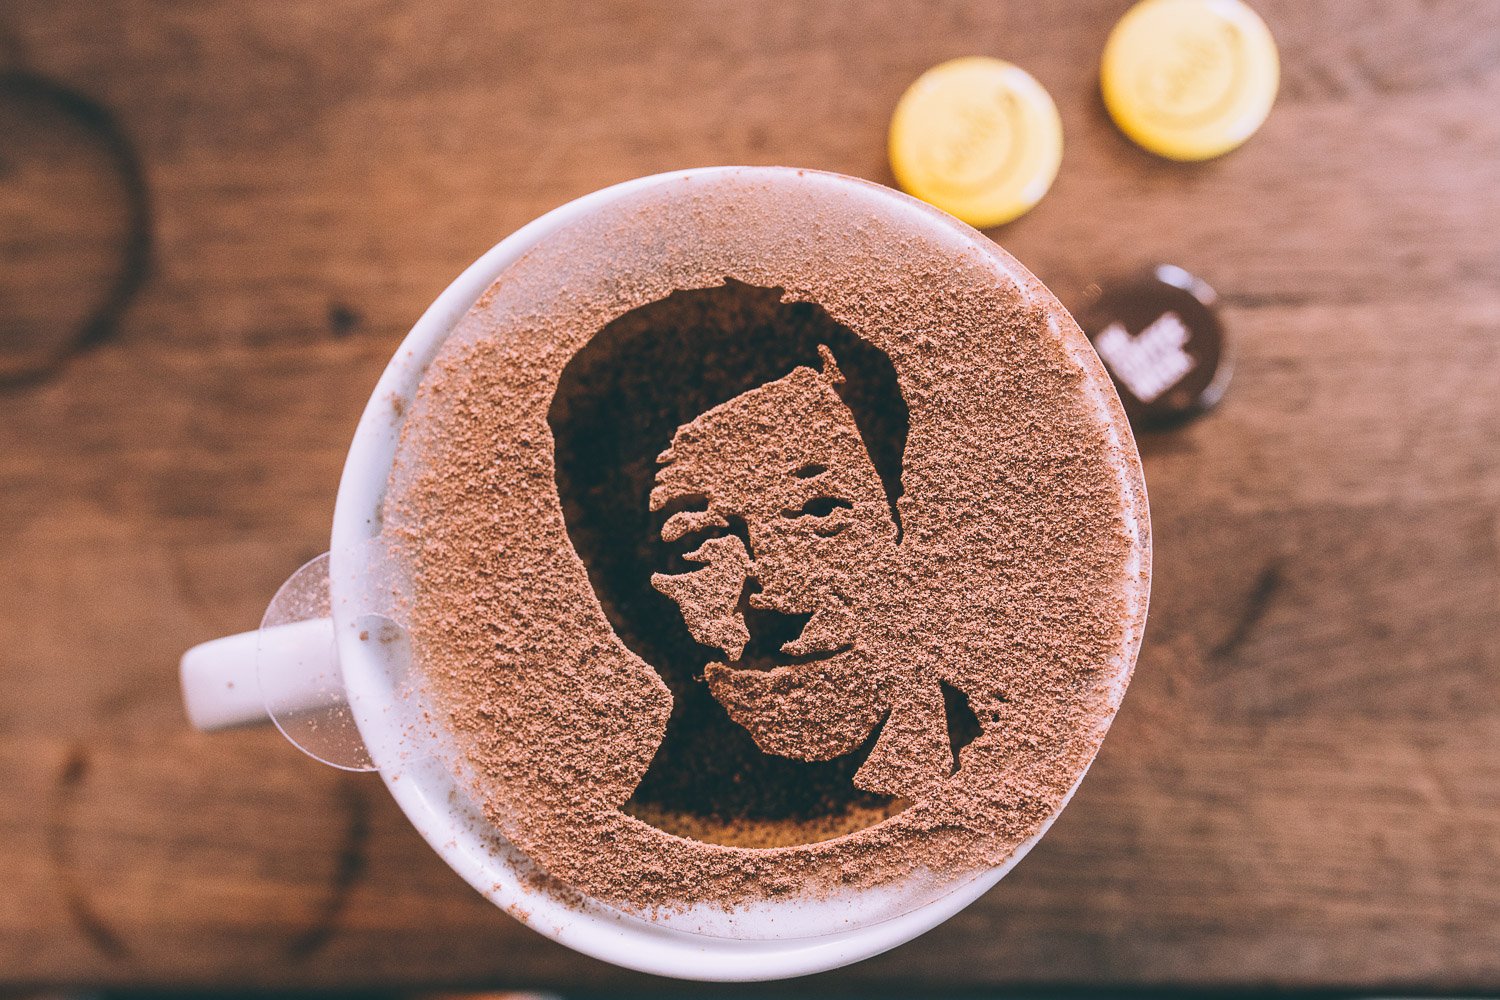 Портрет на кофейной пенке